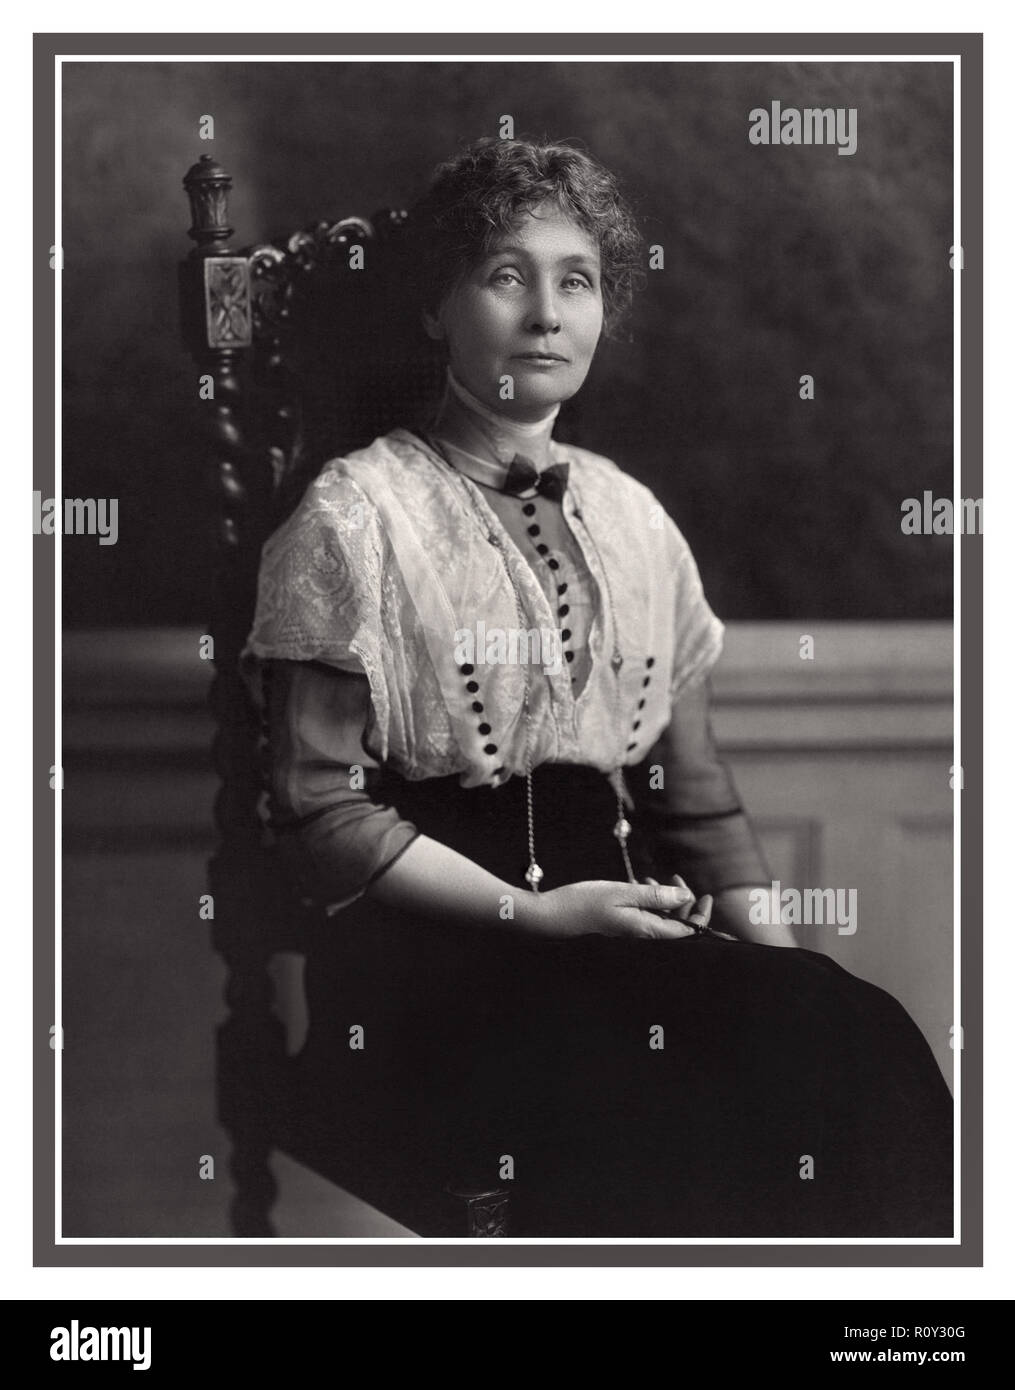 Emmeline Pankhurst suffragette Portrait 1913 (née Goulden; vers le 15 juillet 1858 – 14 juin 1928) était une militante politique britannique et chef du mouvement britannique suffragette qui a aidé les femmes à gagner le droit de vote. En 1999, il a nommé Pankhurst comme l'une des 100 personnes les plus importantes du XXe siècle, déclarant qu'il avait « façonné une idée des femmes pour notre époque ; elle a secoué la société dans un nouveau modèle dont il ne pouvait y avoir de retour ». Banque D'Images